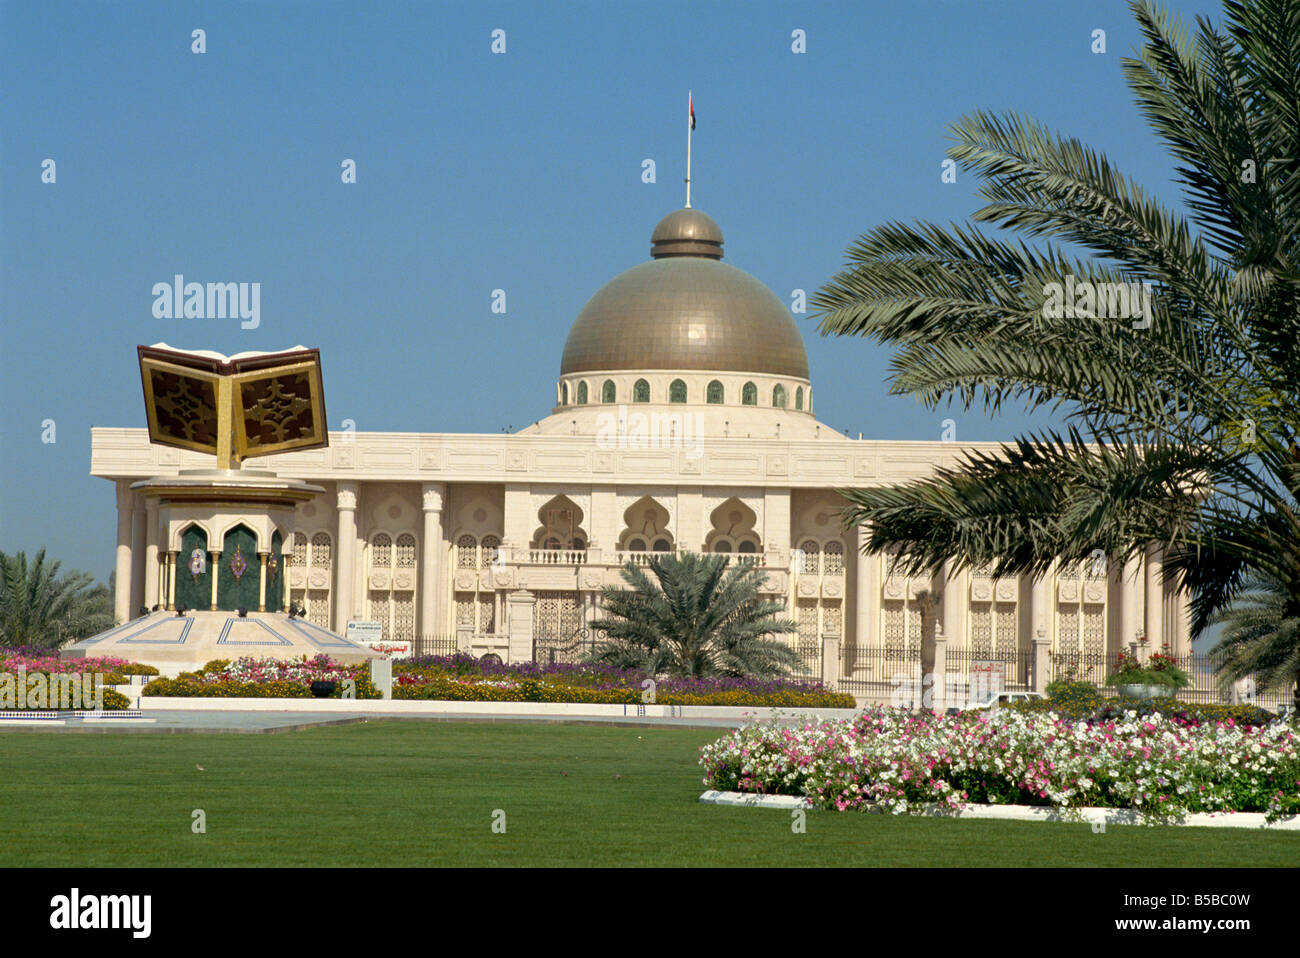 Le Nouvel Hôtel de Ville Sharjah Emirats Arabes Unis Moyen-orient Banque D'Images